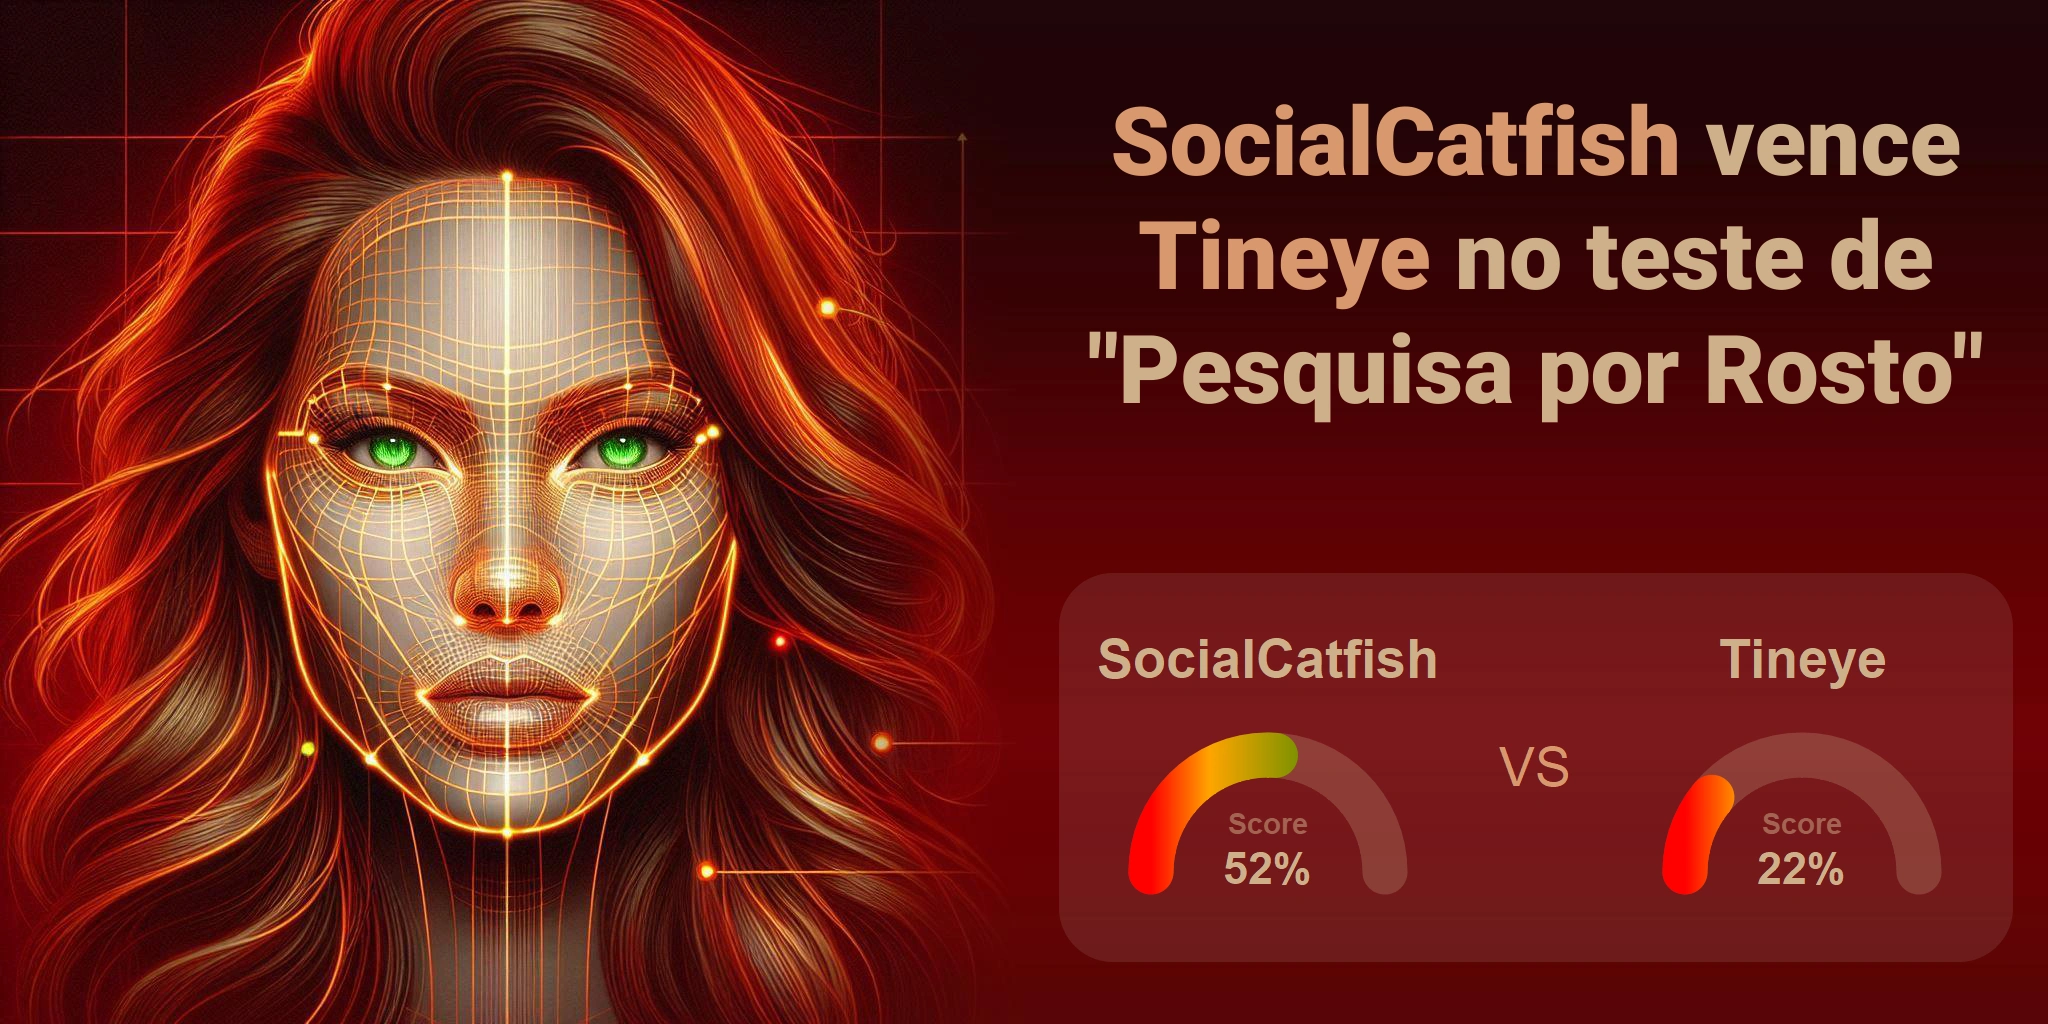 Qual é melhor para busca de rostos: <br>Tineye ou SocialCatfish?